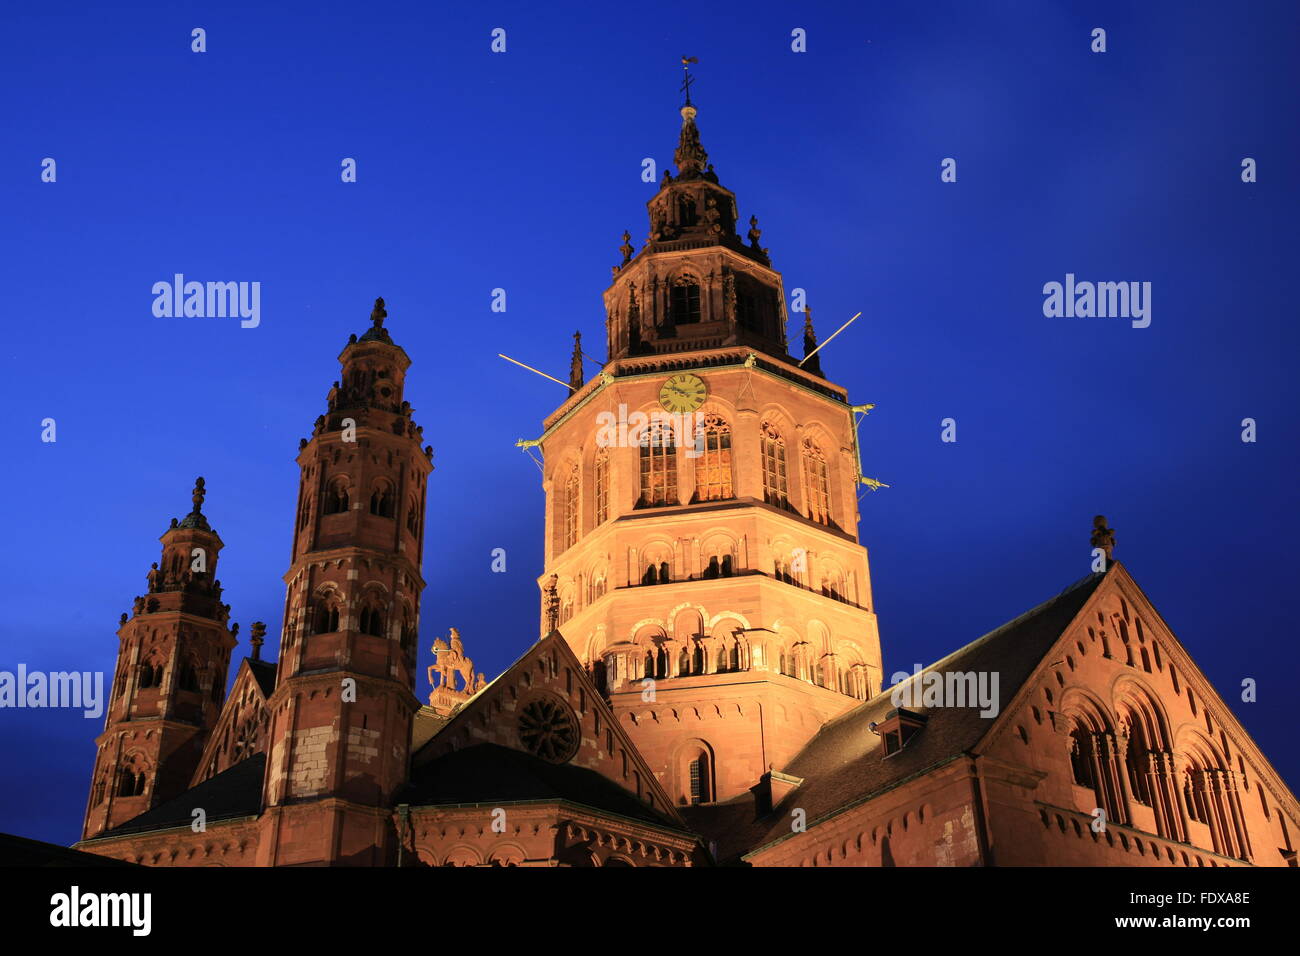 DEU Deutschland, Renania-Palatinato, Mainz, Altstadt, abendlich beleuchteter Dom St Martin Foto Stock